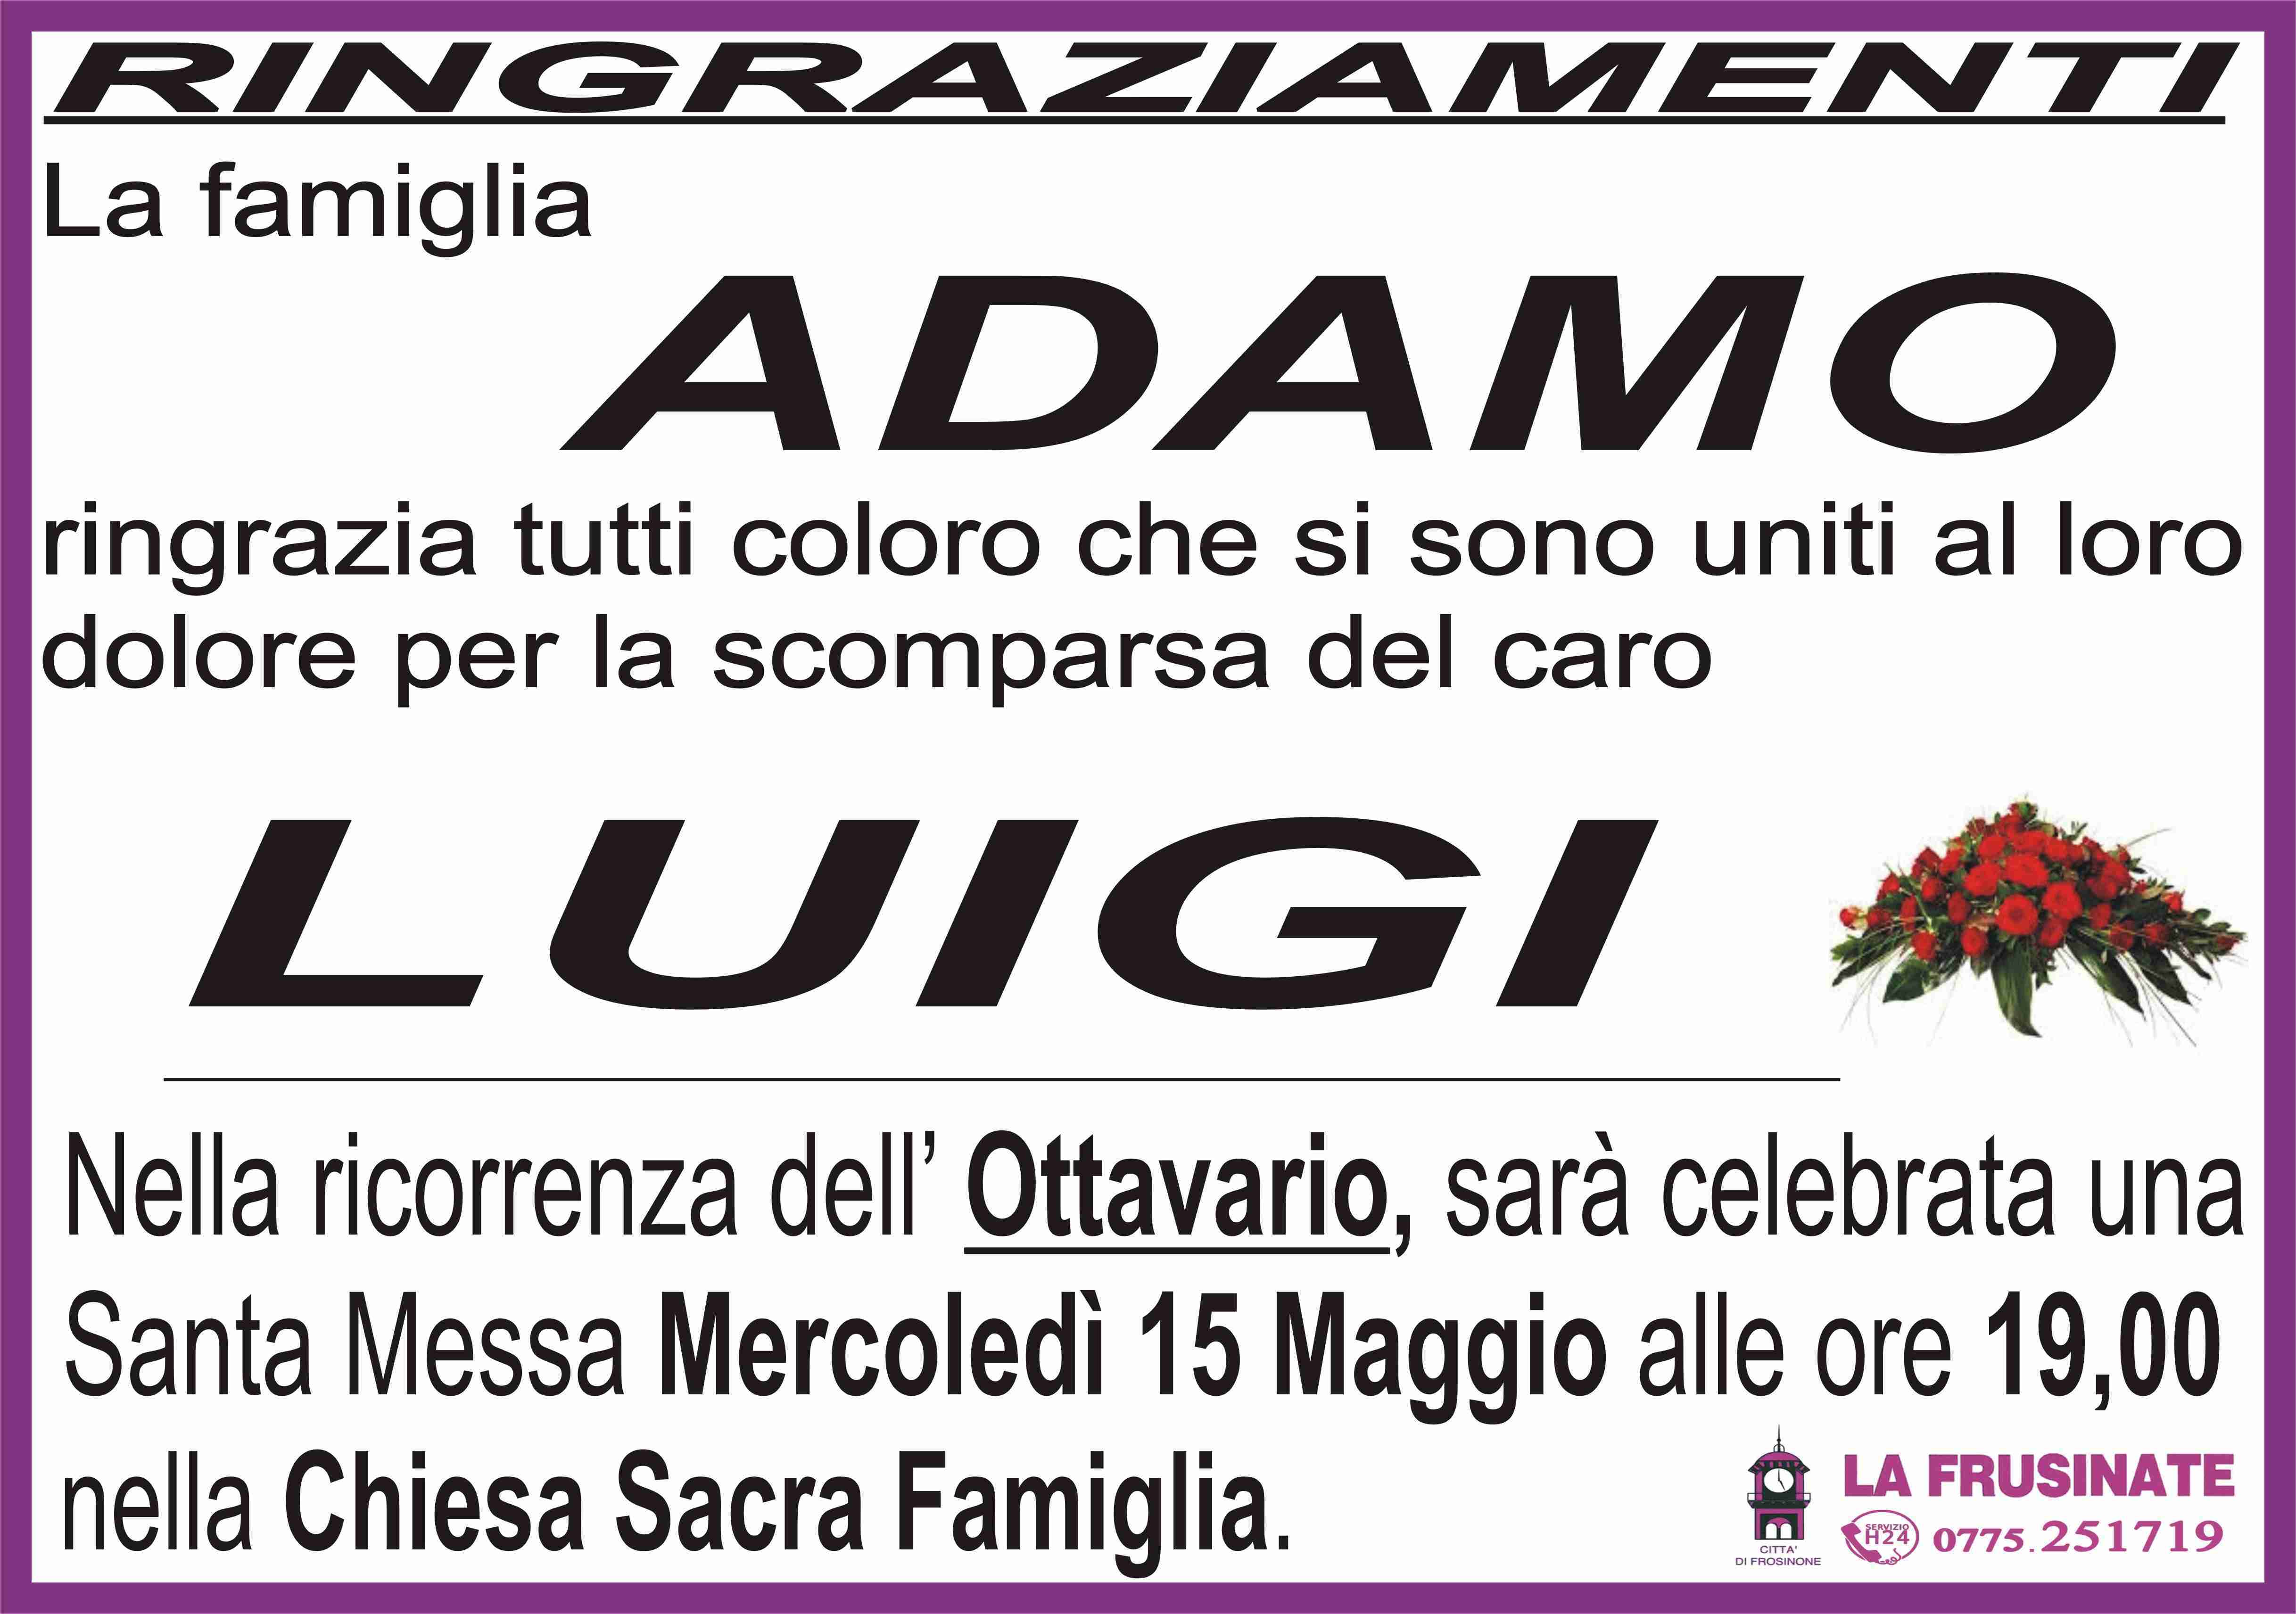 Luigi Adamo